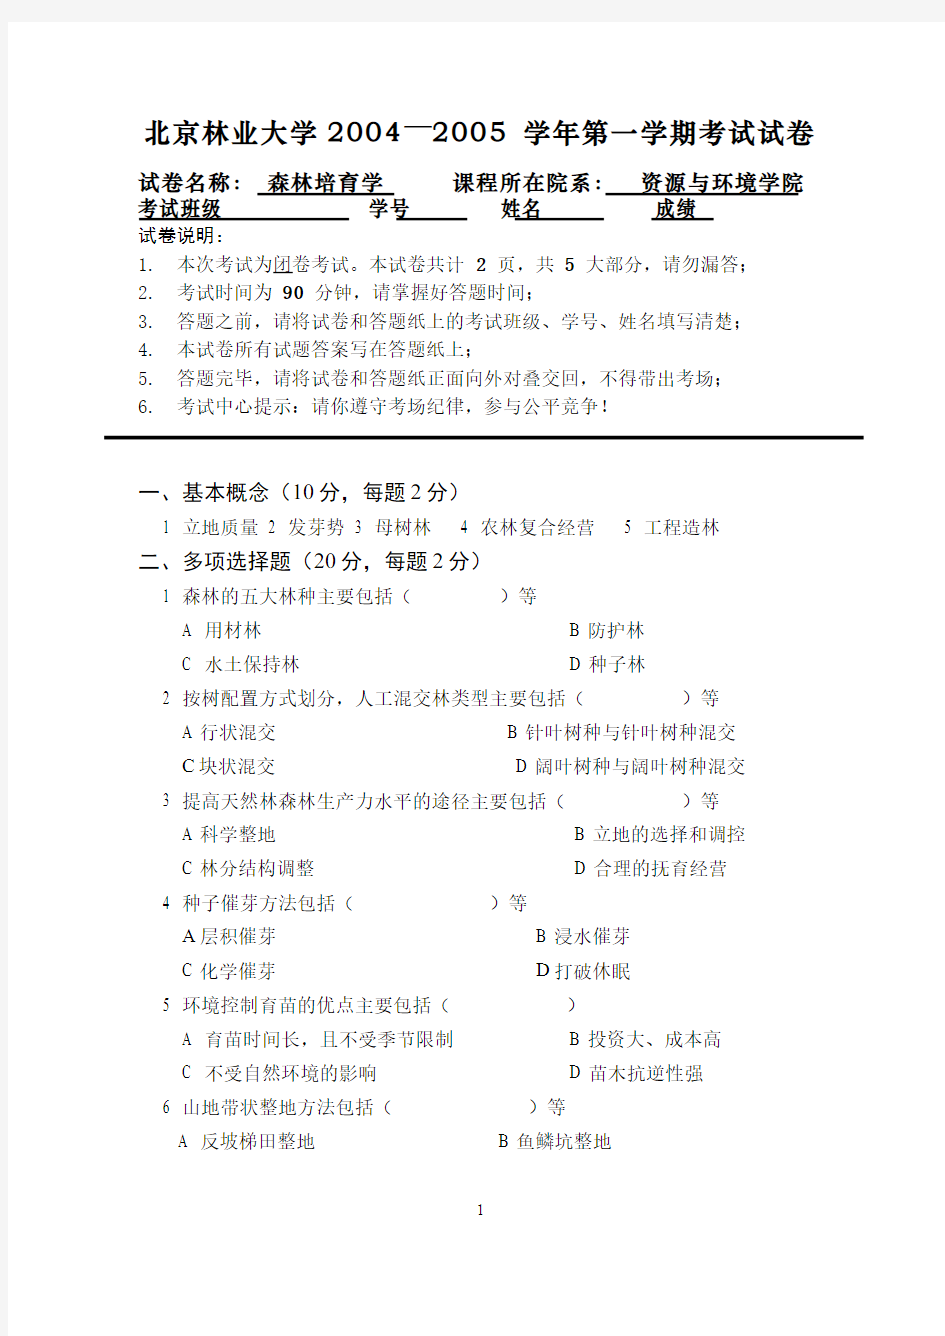 森林培育学__北京林业大学(4)--森林培育学课程期末考试3(试卷及答案题解)